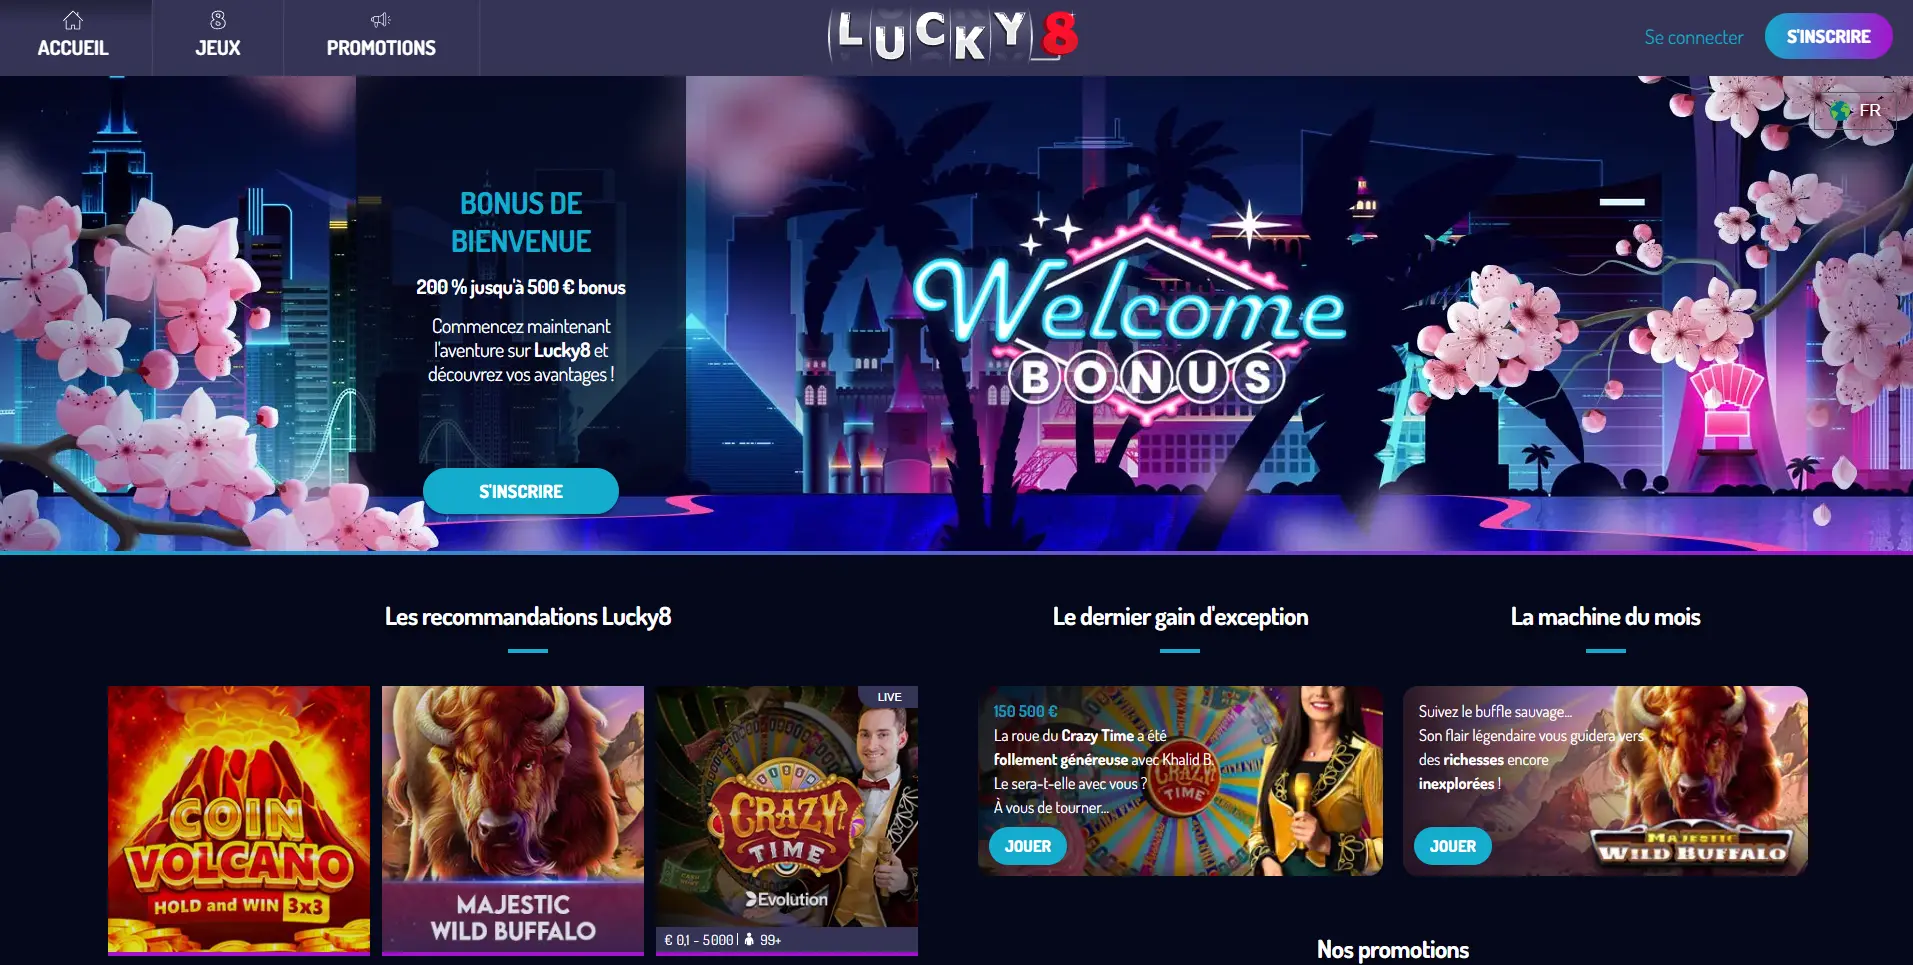 Lucky 8 Accueil casino